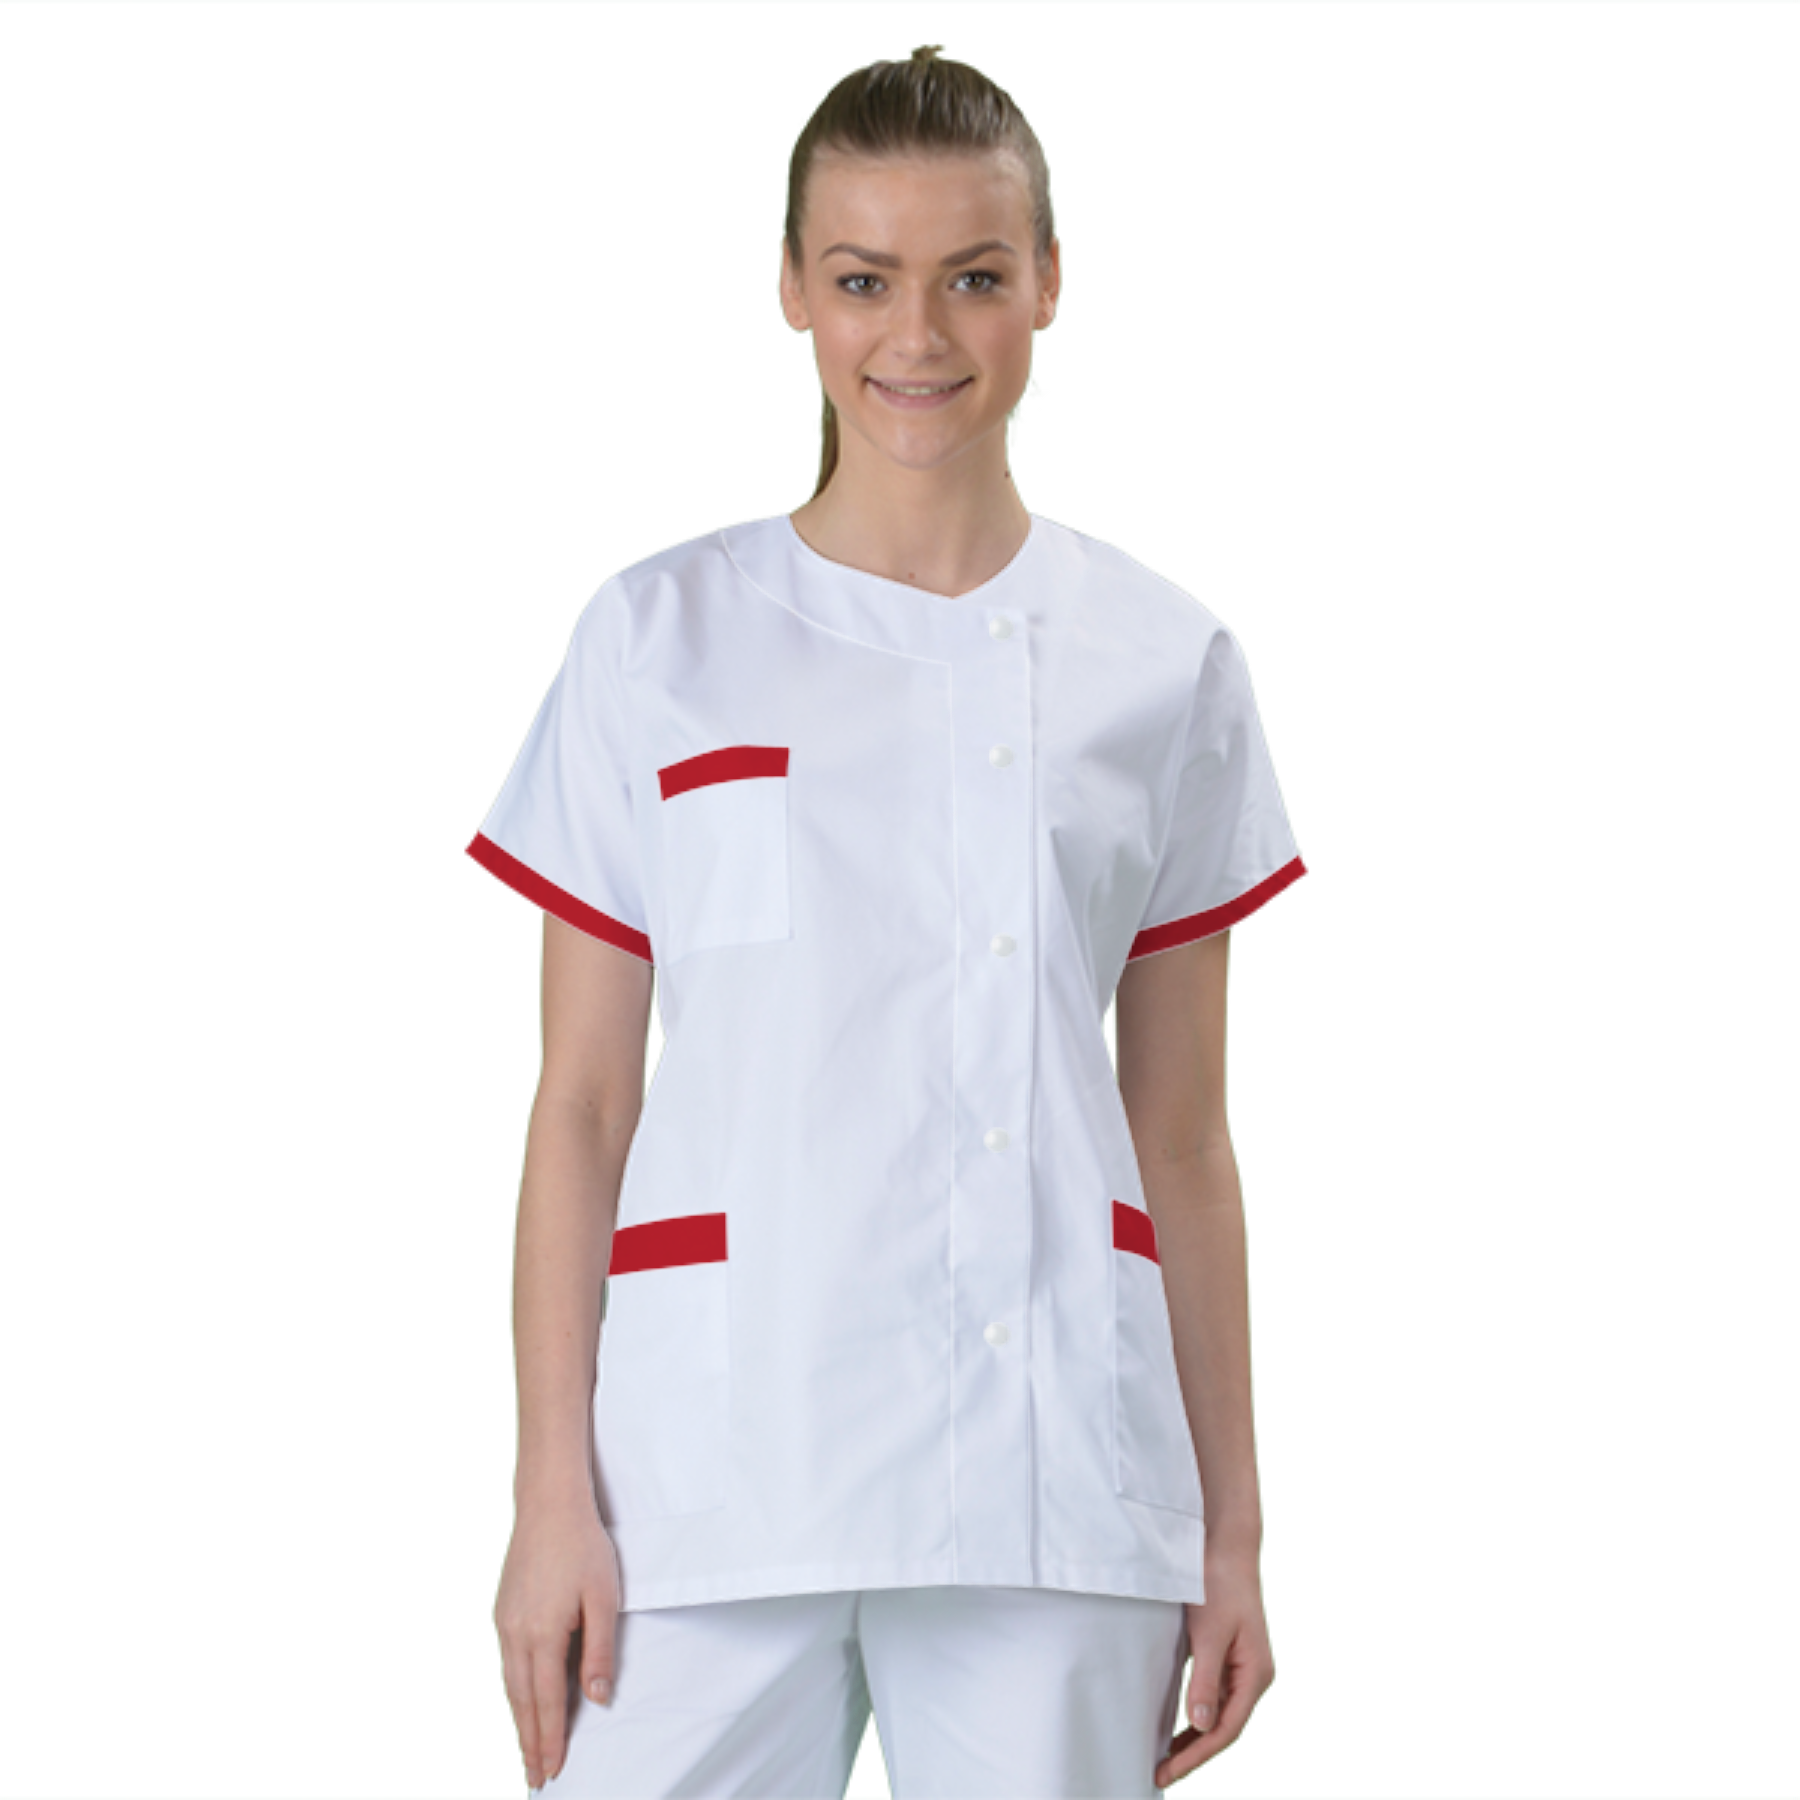 blouse-medicale-col-carre-a-personnaliser acheté - par Catherine - le 16-01-2019